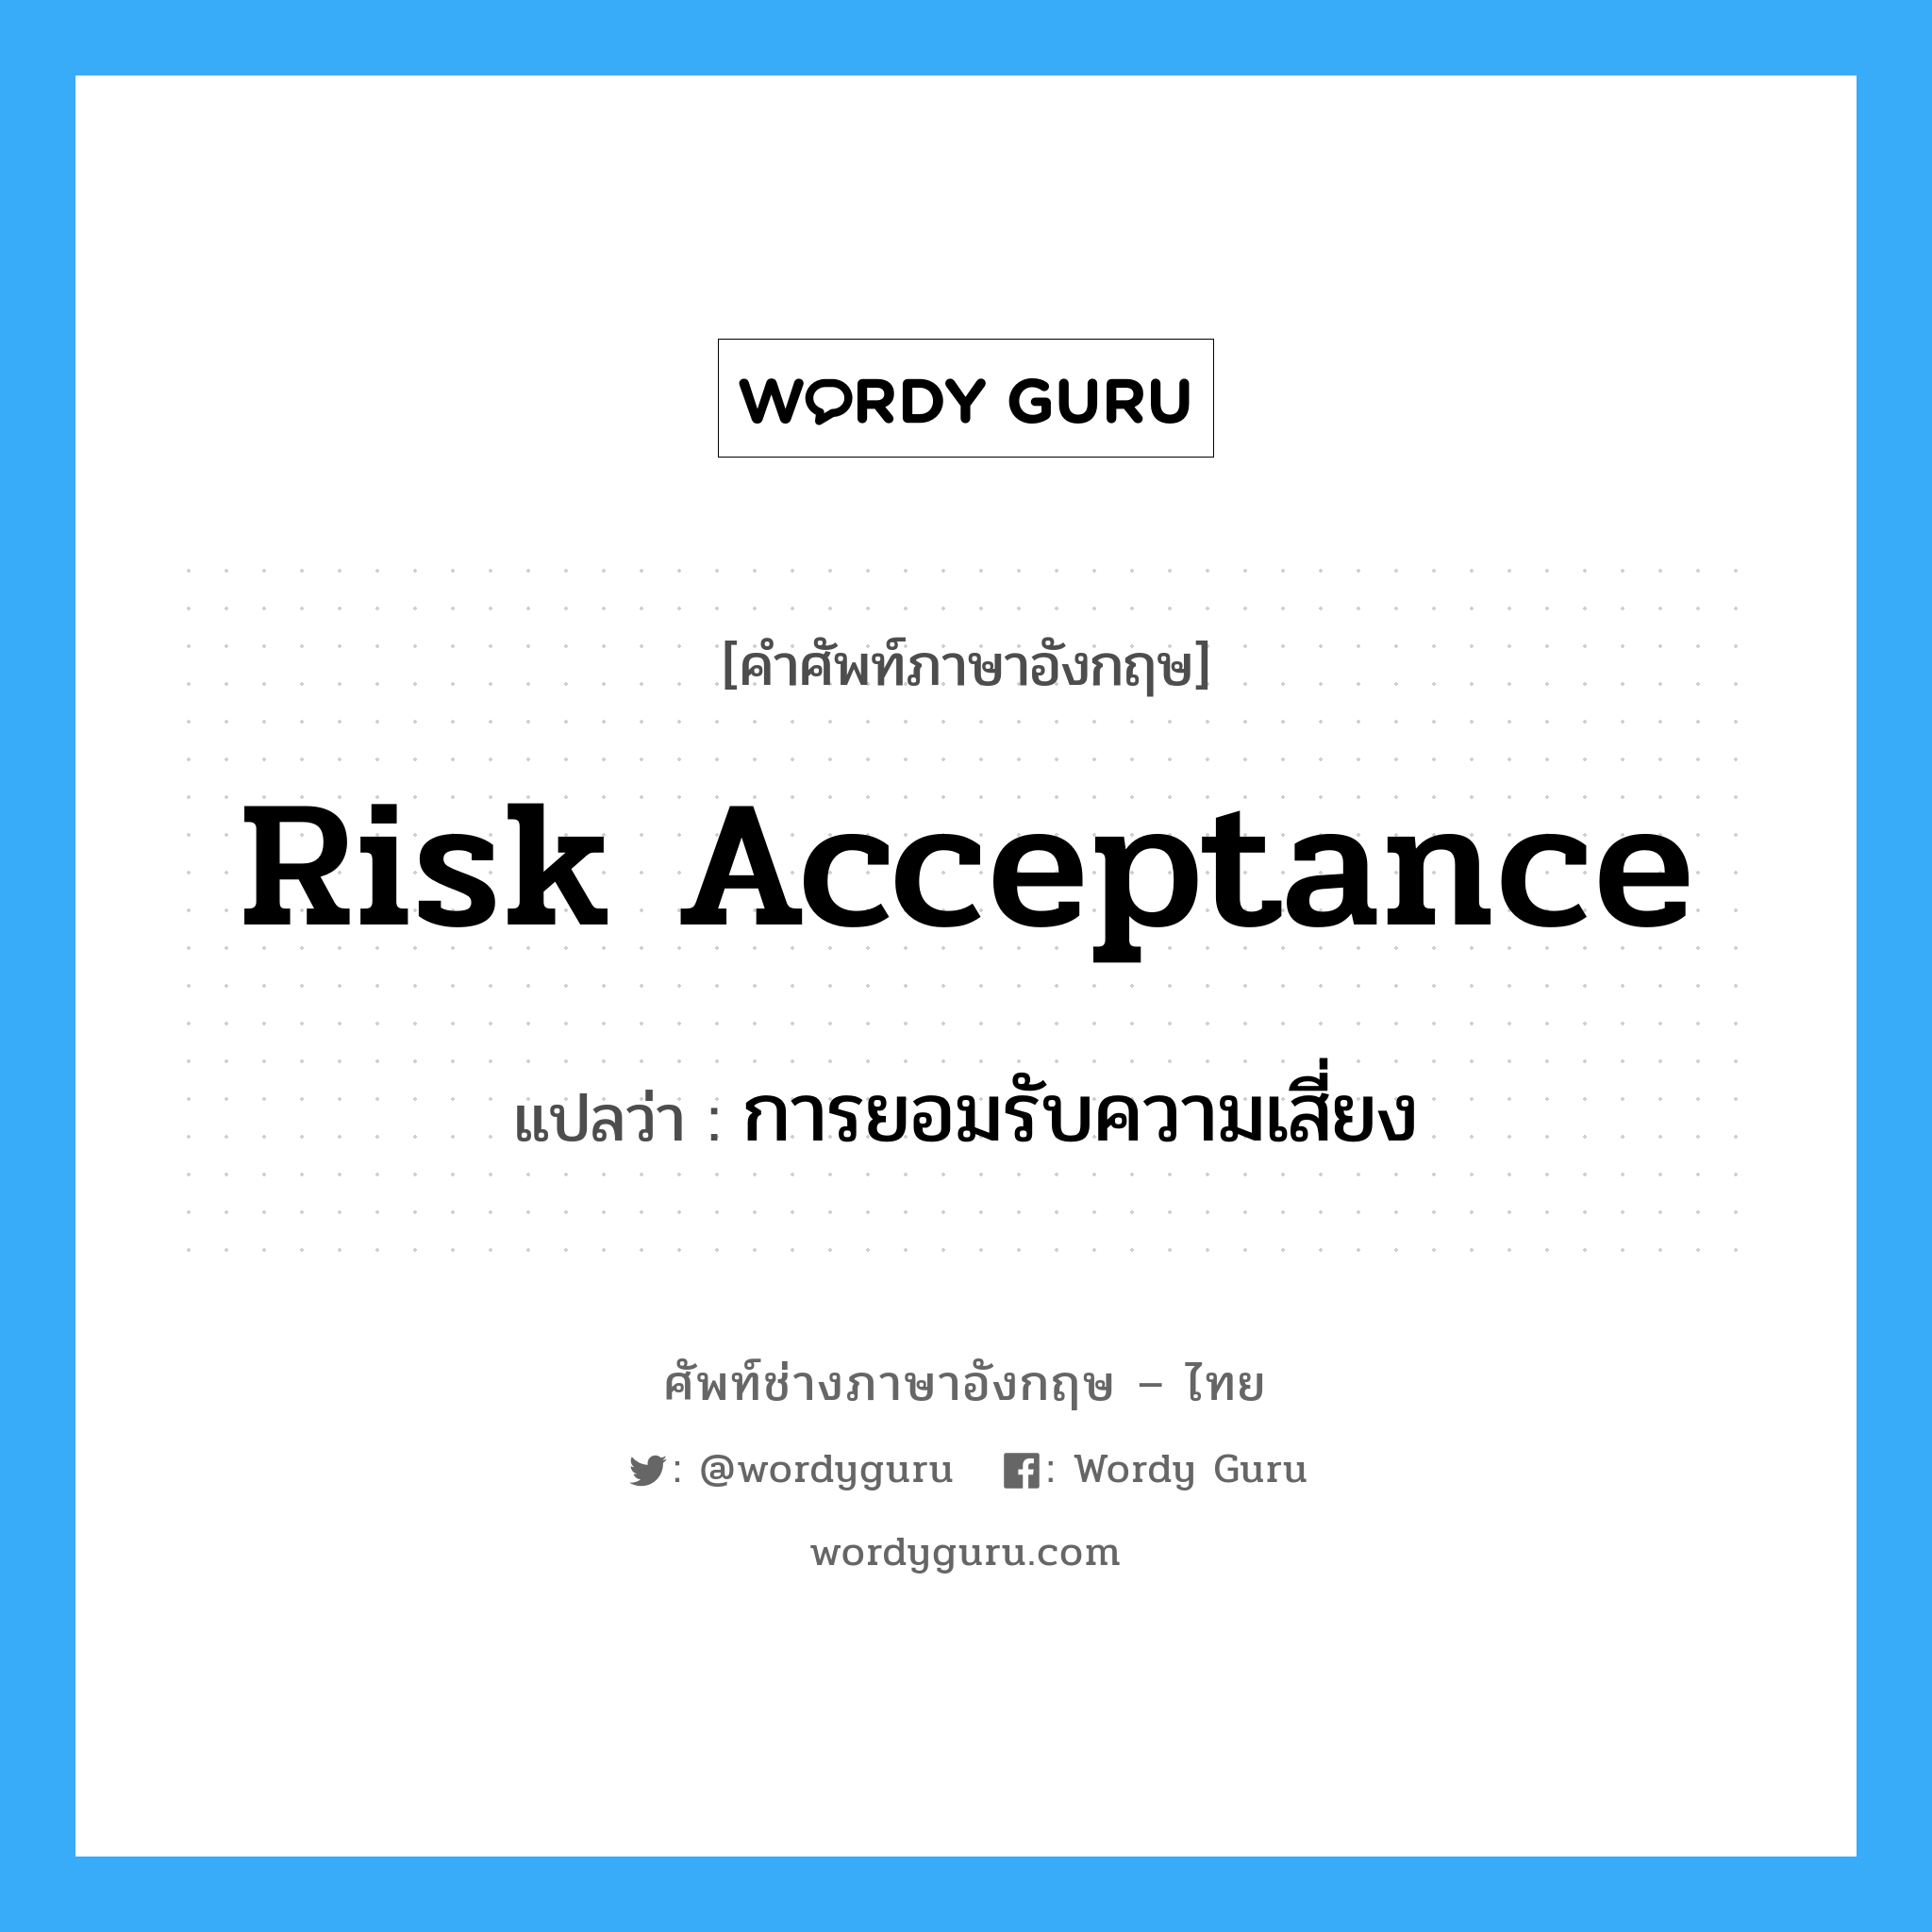 การยอมรับความเสี่ยง ภาษาอังกฤษ?, คำศัพท์ช่างภาษาอังกฤษ - ไทย การยอมรับความเสี่ยง คำศัพท์ภาษาอังกฤษ การยอมรับความเสี่ยง แปลว่า Risk Acceptance